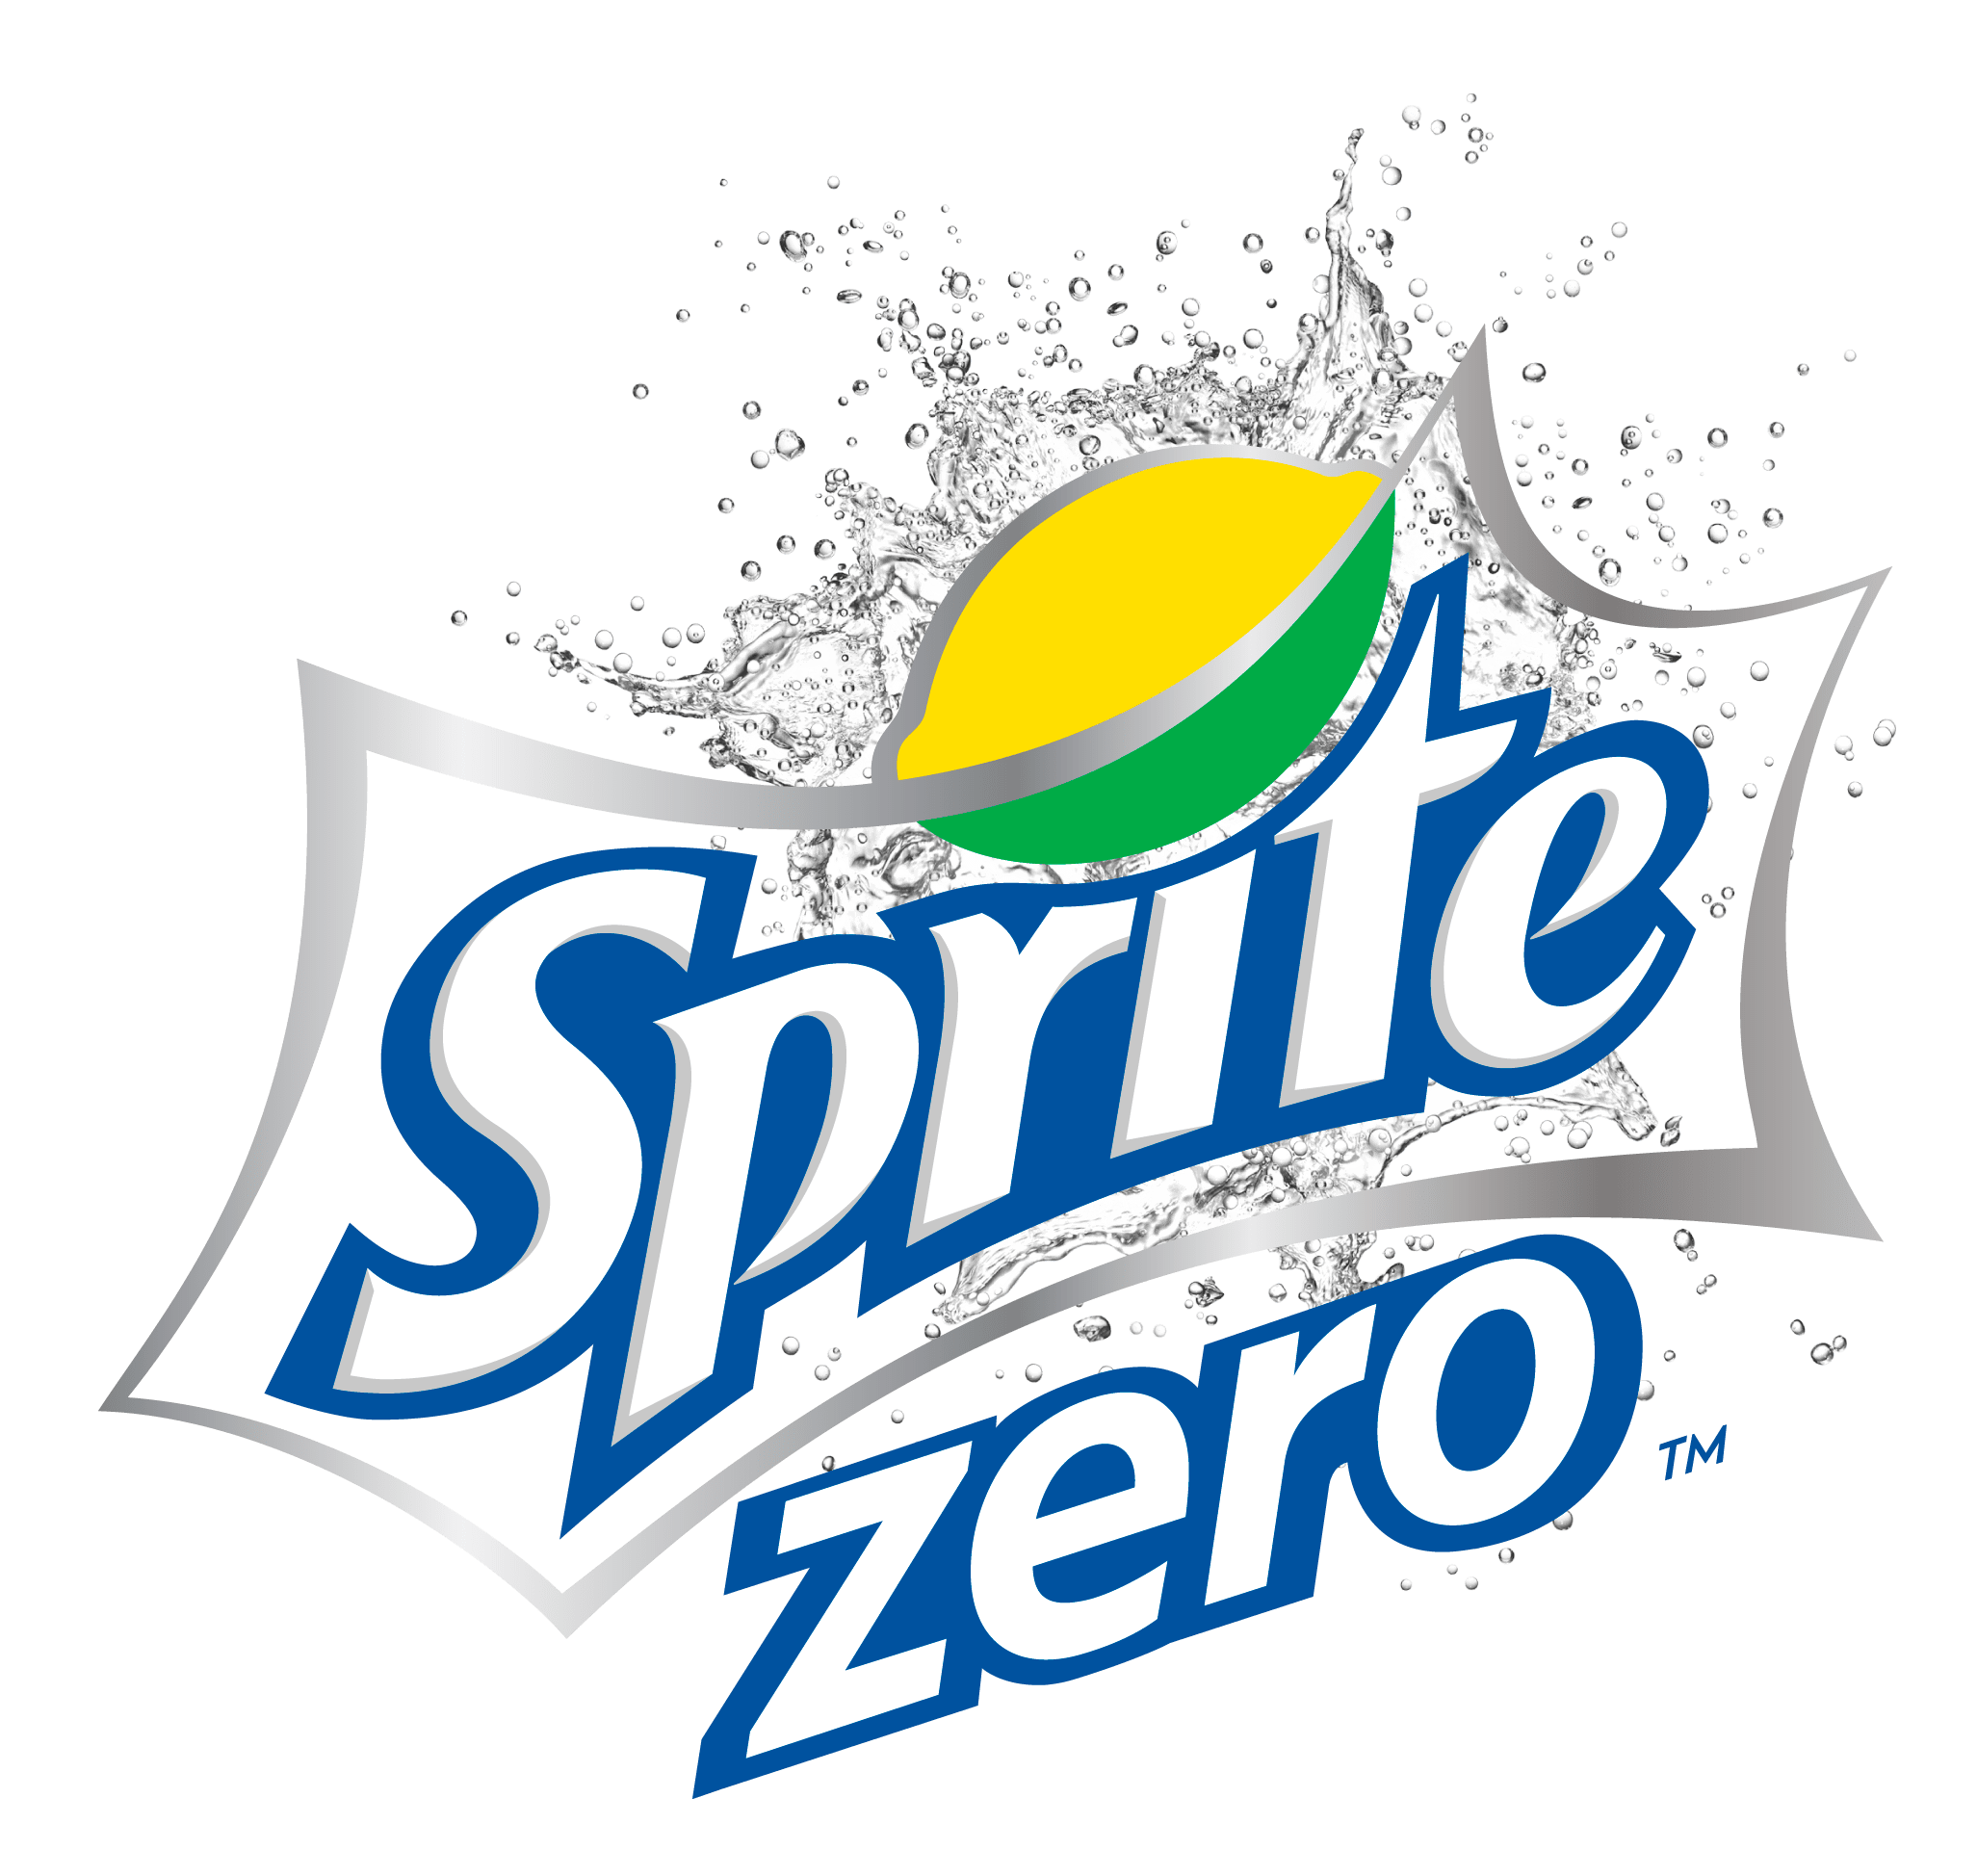 Sprite Zero Logo PNG Image in Transparent pngteam.com